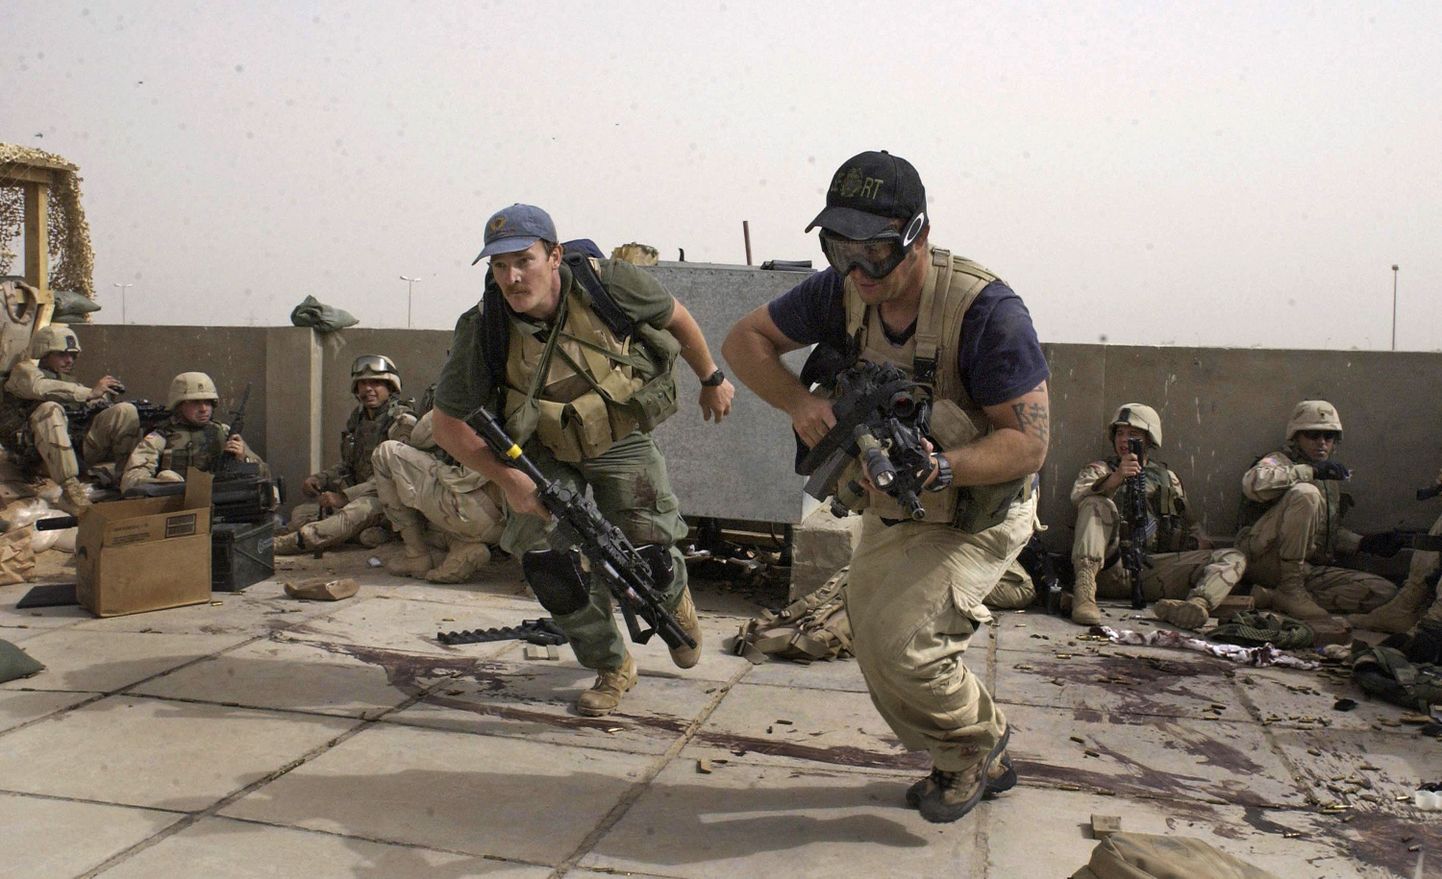 Сотрудники охранной фирмы Blackwater на огневой позиции вместе с испанскими контингентом НАТО в иракском городе Наджаф во время восстания шиитов. 4 апреля 2004 года.